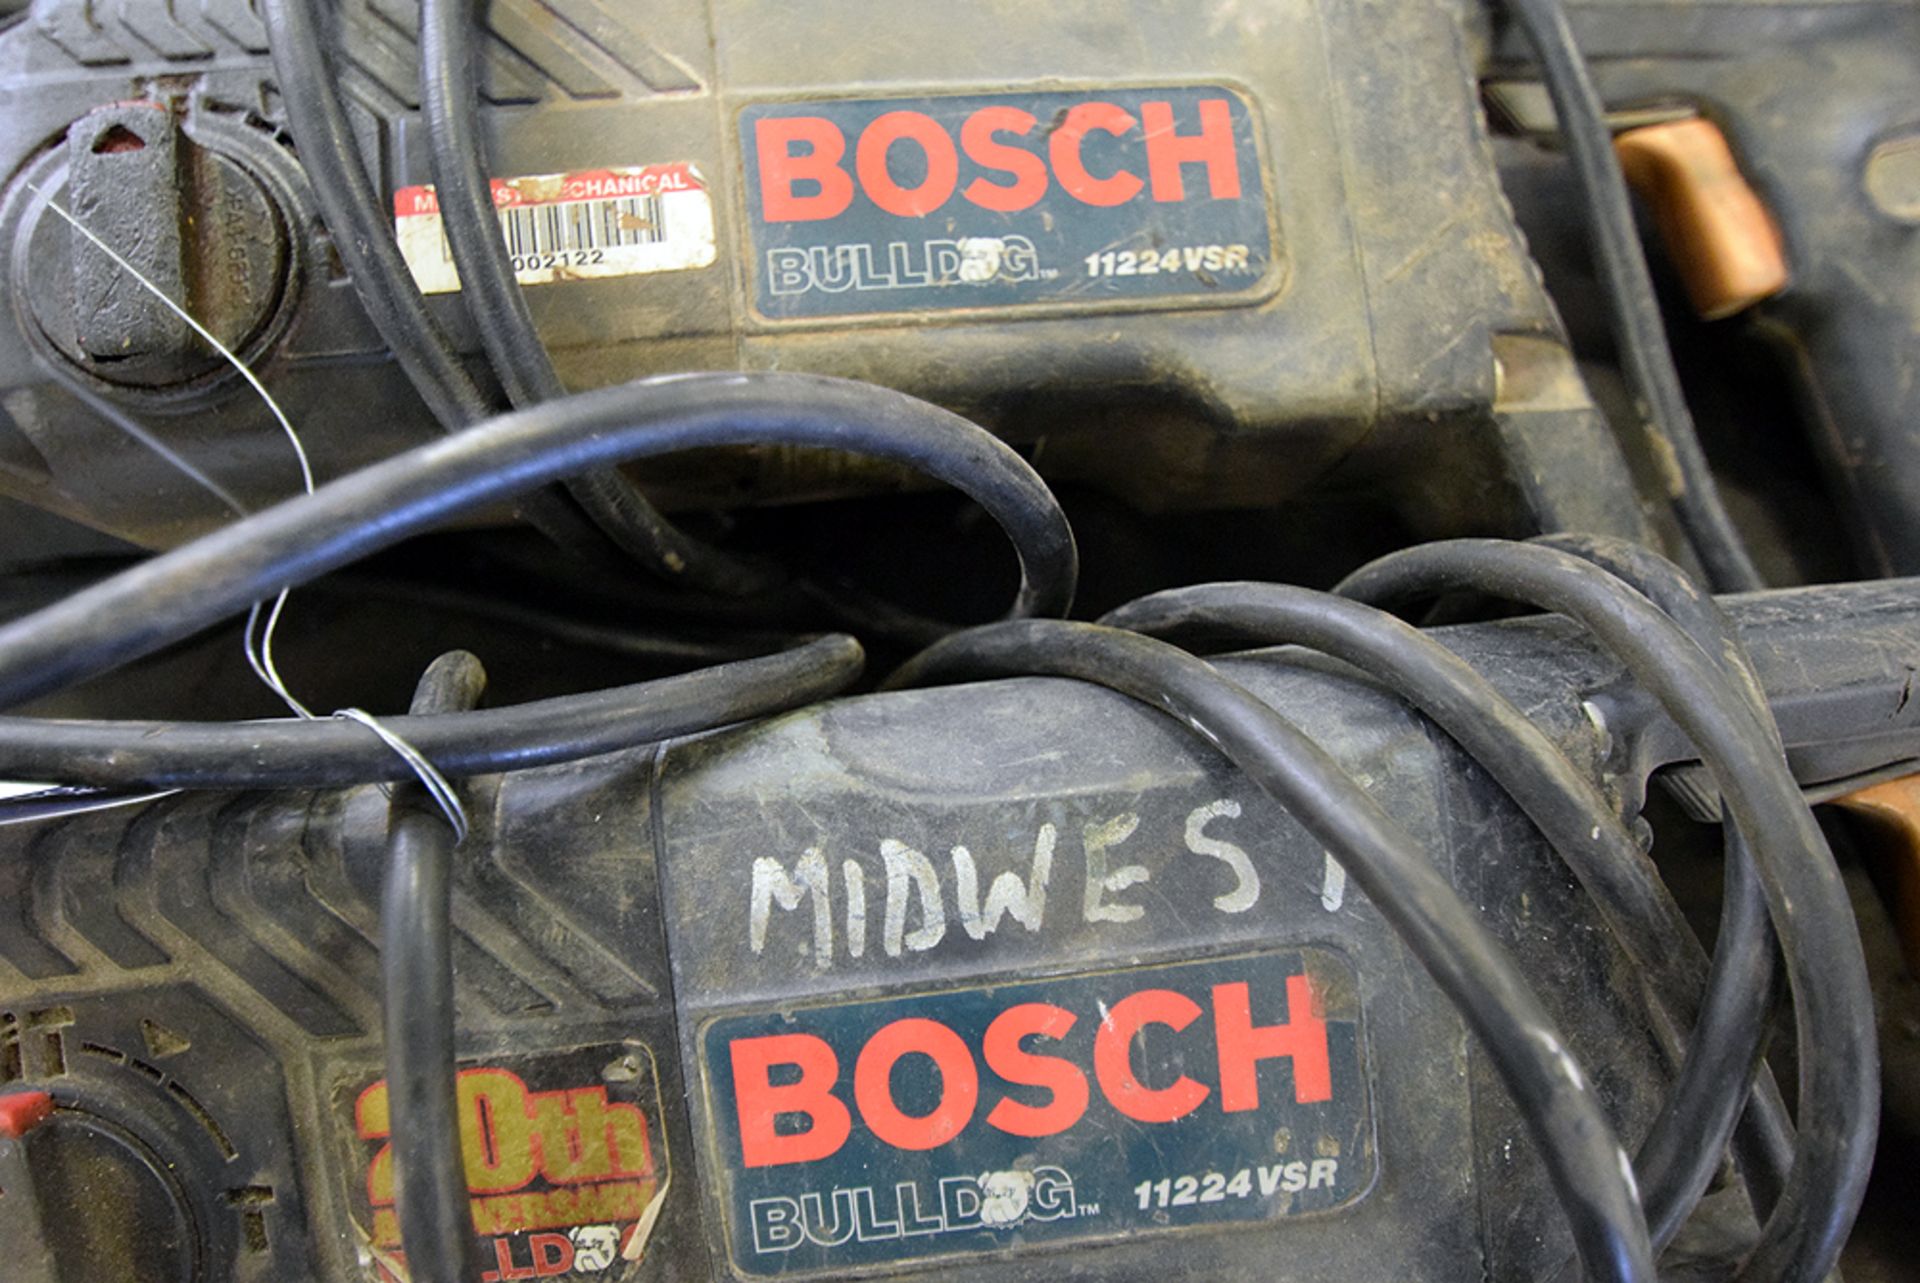 Bosch Bulldog Model 11224TSR Hammer Drills - Image 2 of 2